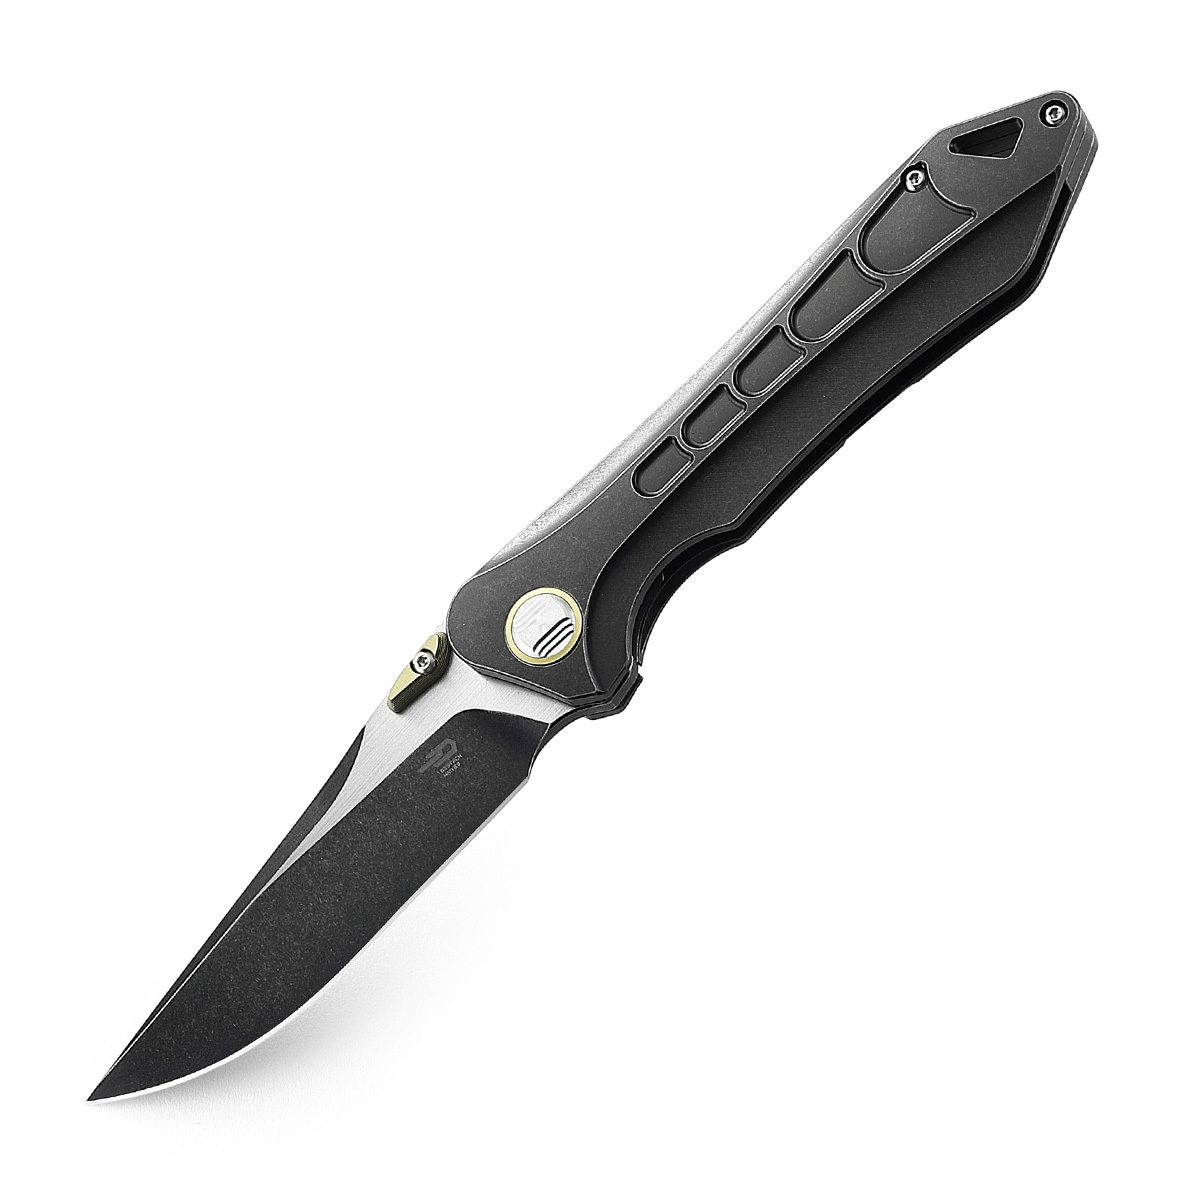 Складной нож Bestech Supersonic, сталь S35VN, рукоять титан складной нож bestech riverstone сталь 154cm рукоять черная микарта